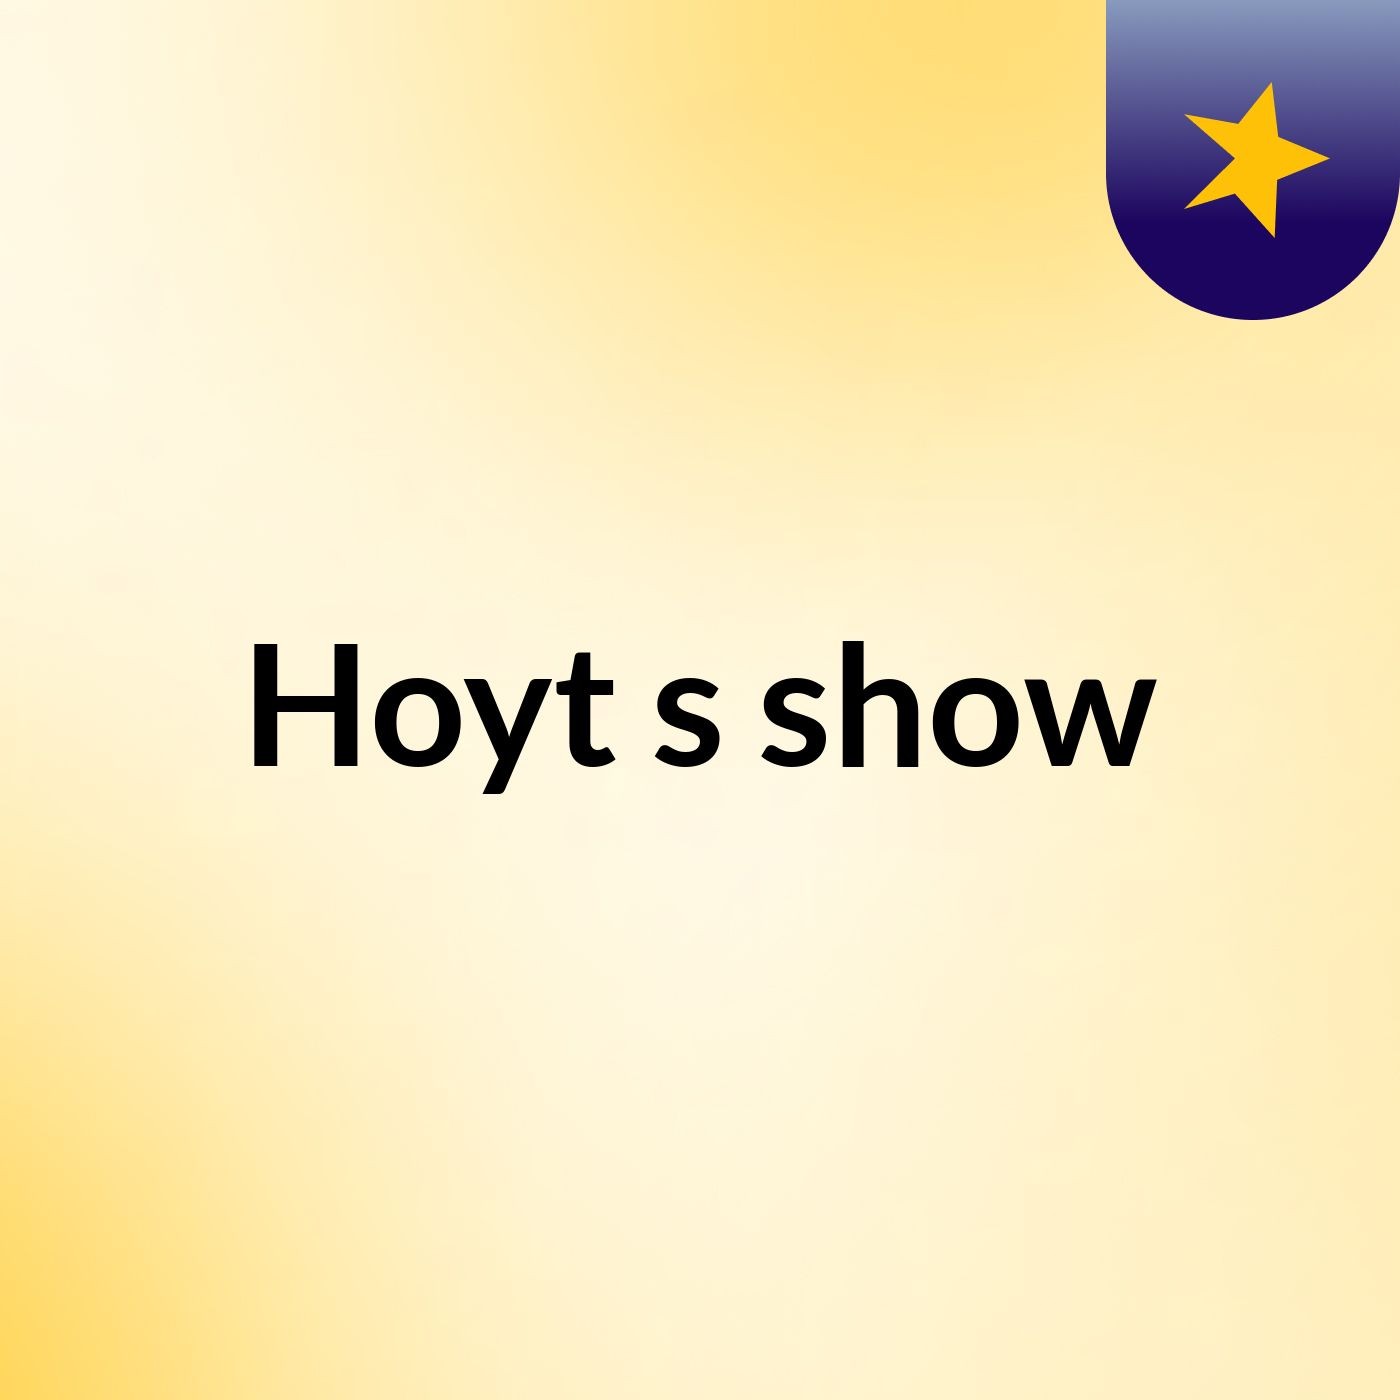 Hoyt's show